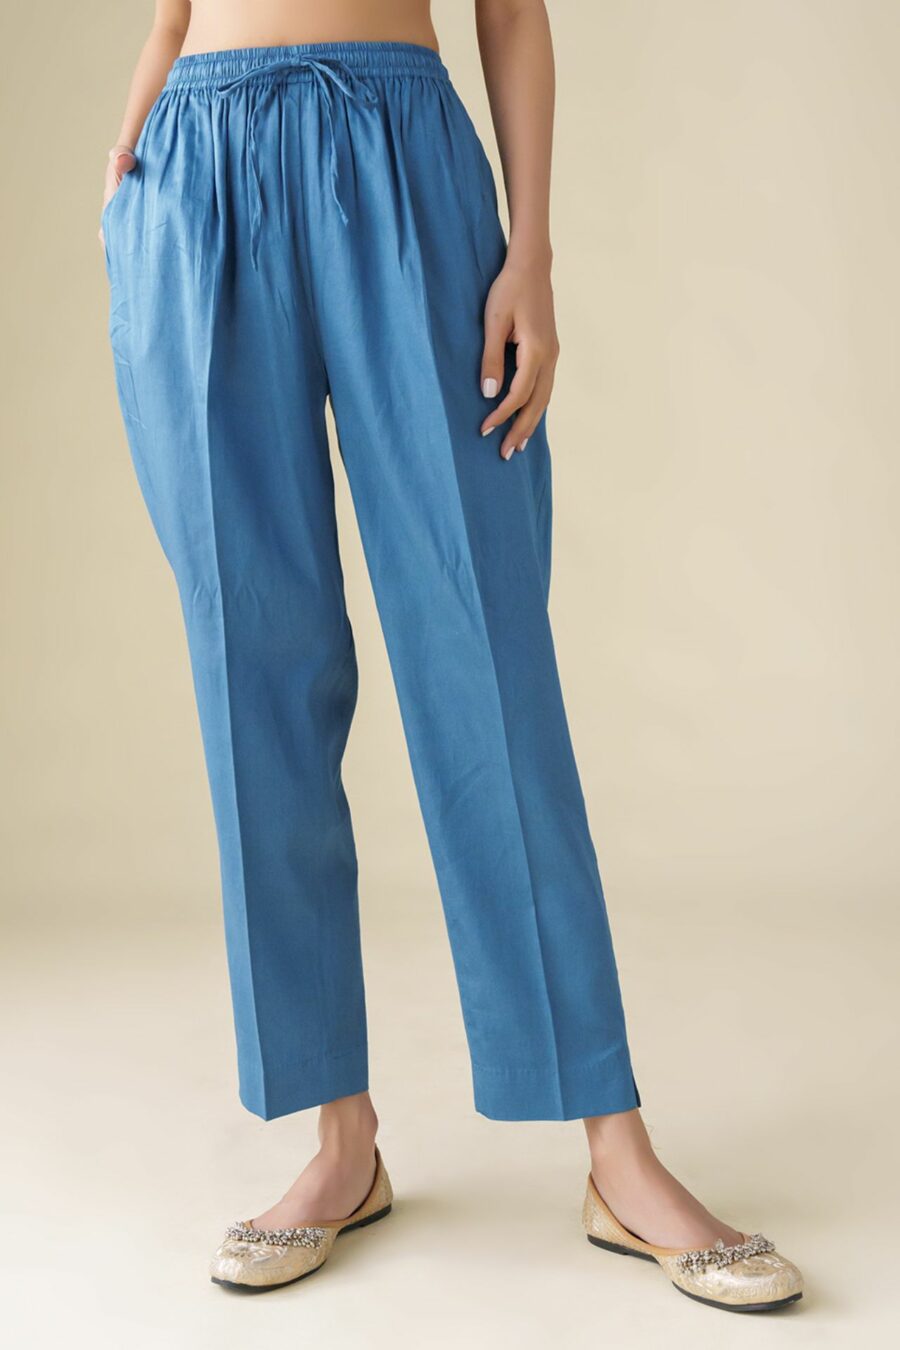 Blue Cotton Silk Pant